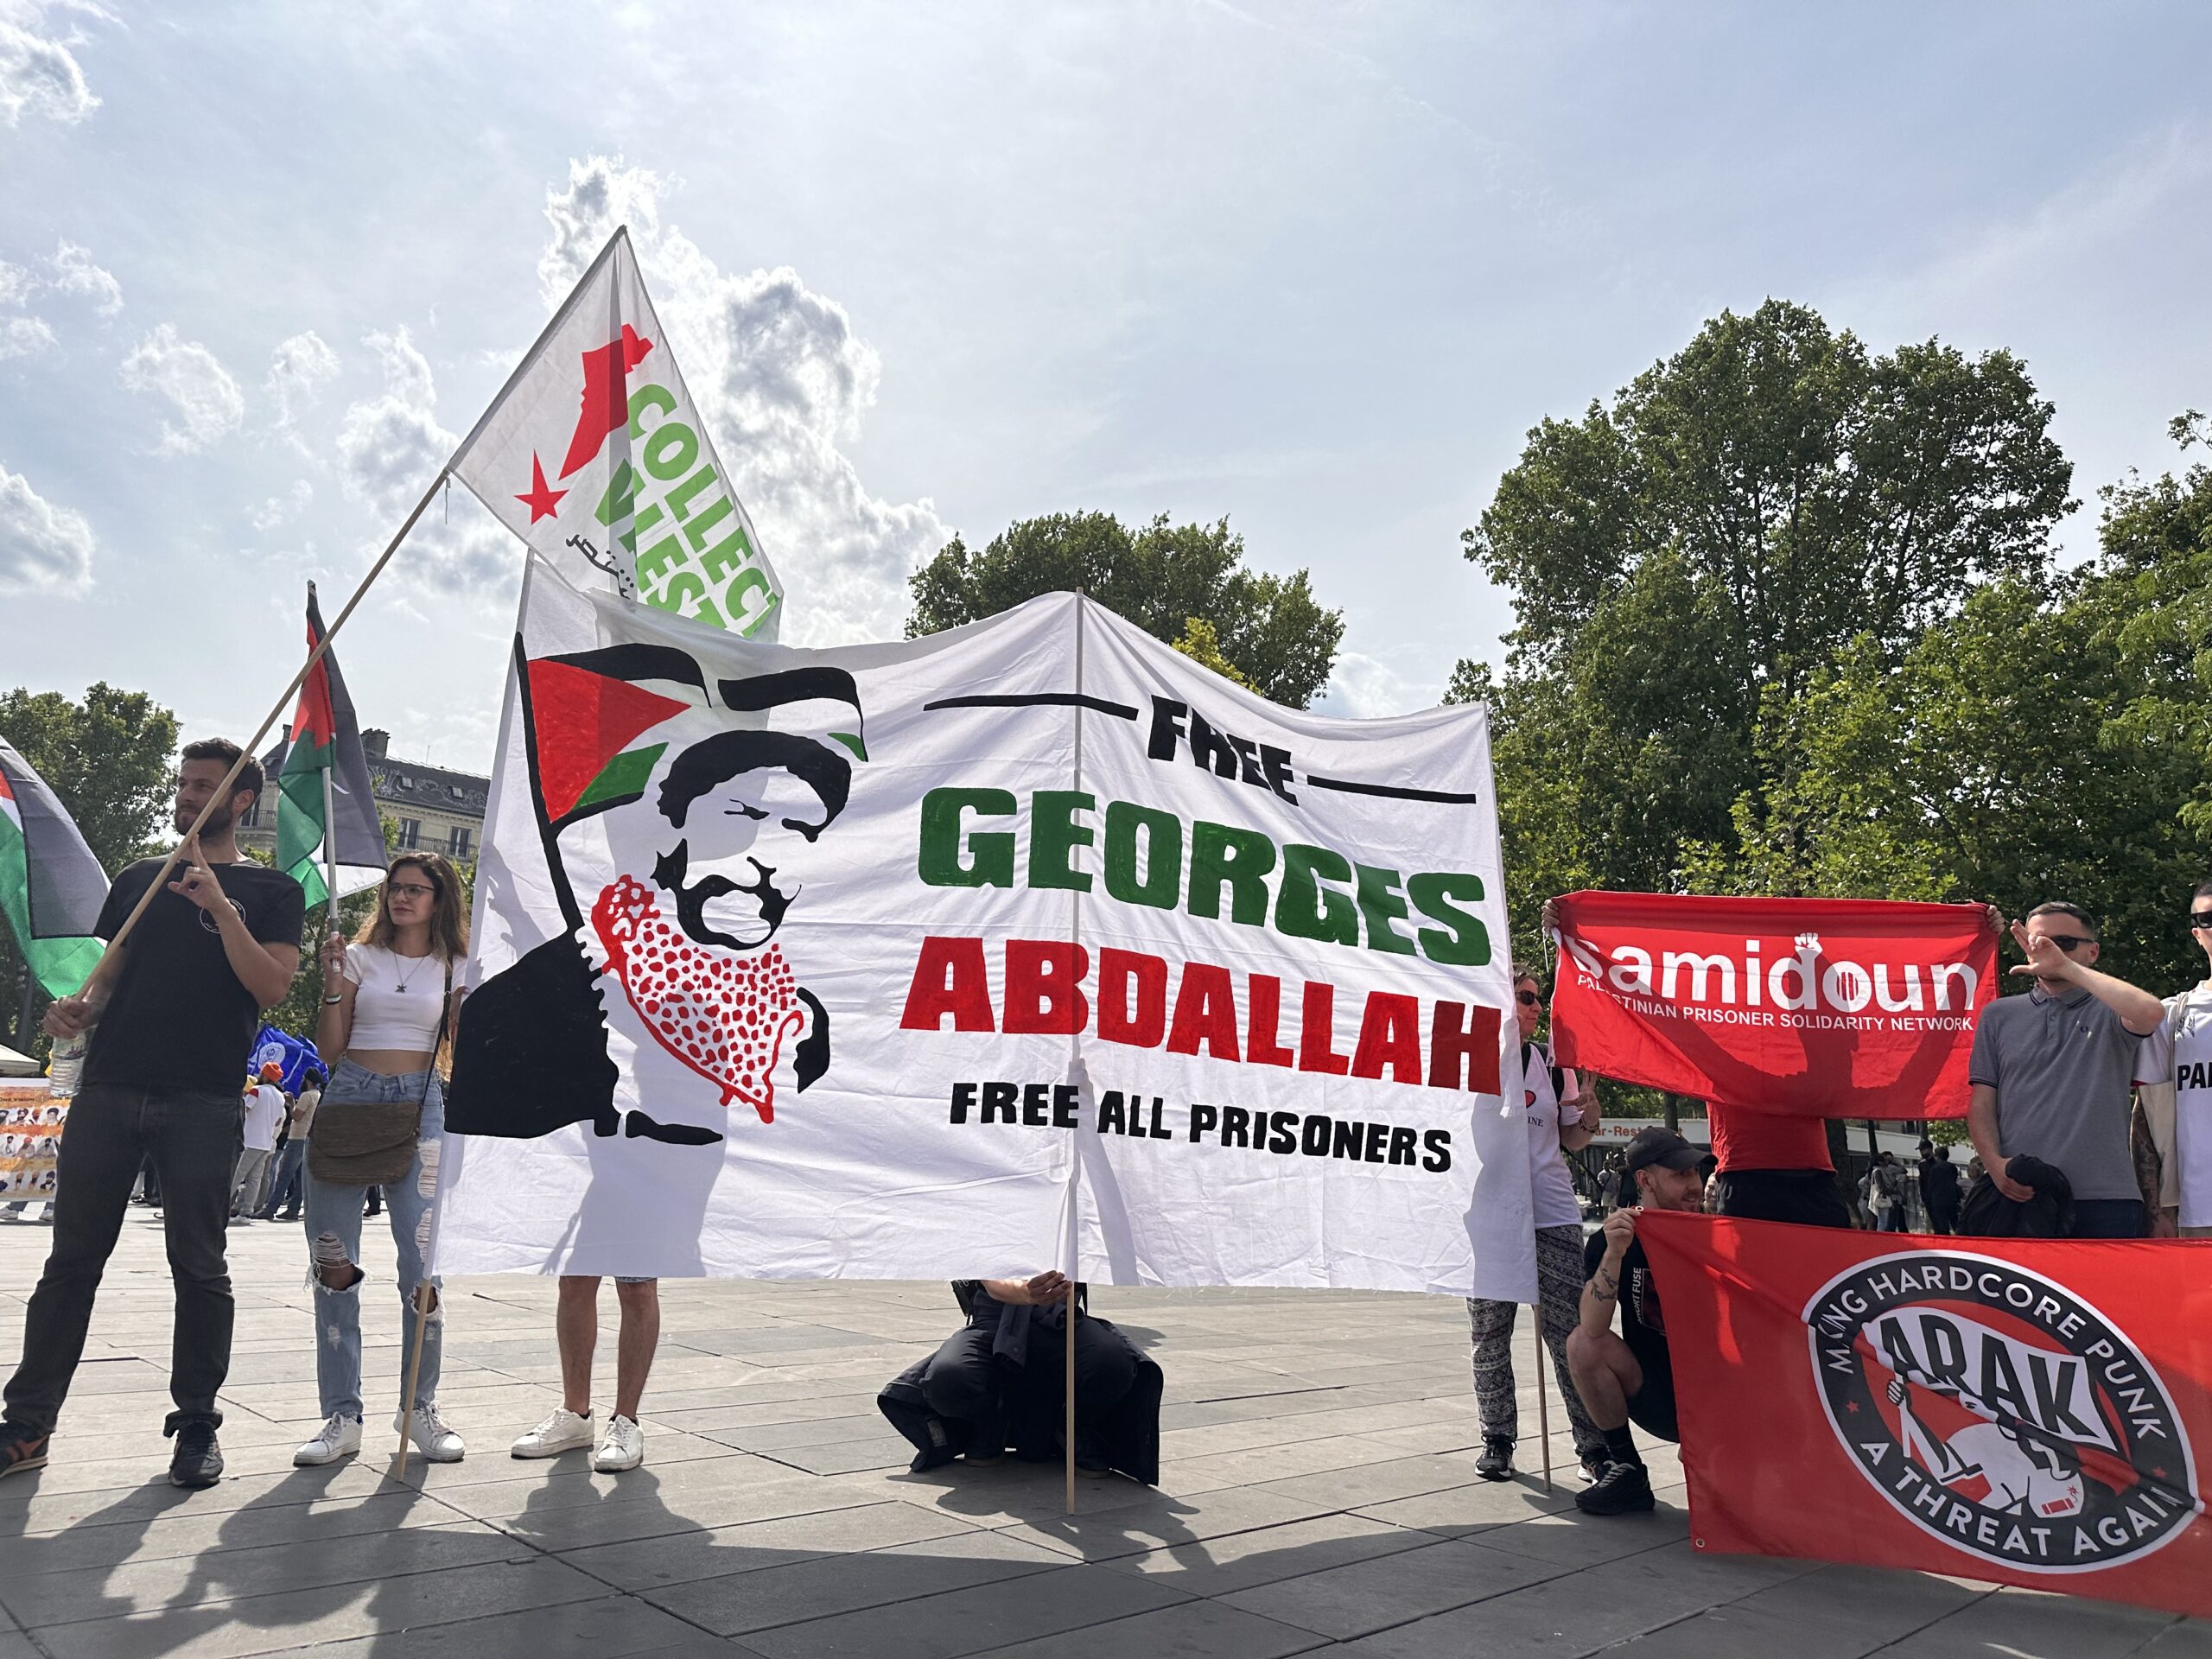 Des centaines de personnes manifestent à Paris pour la libération de Georges Abdallah